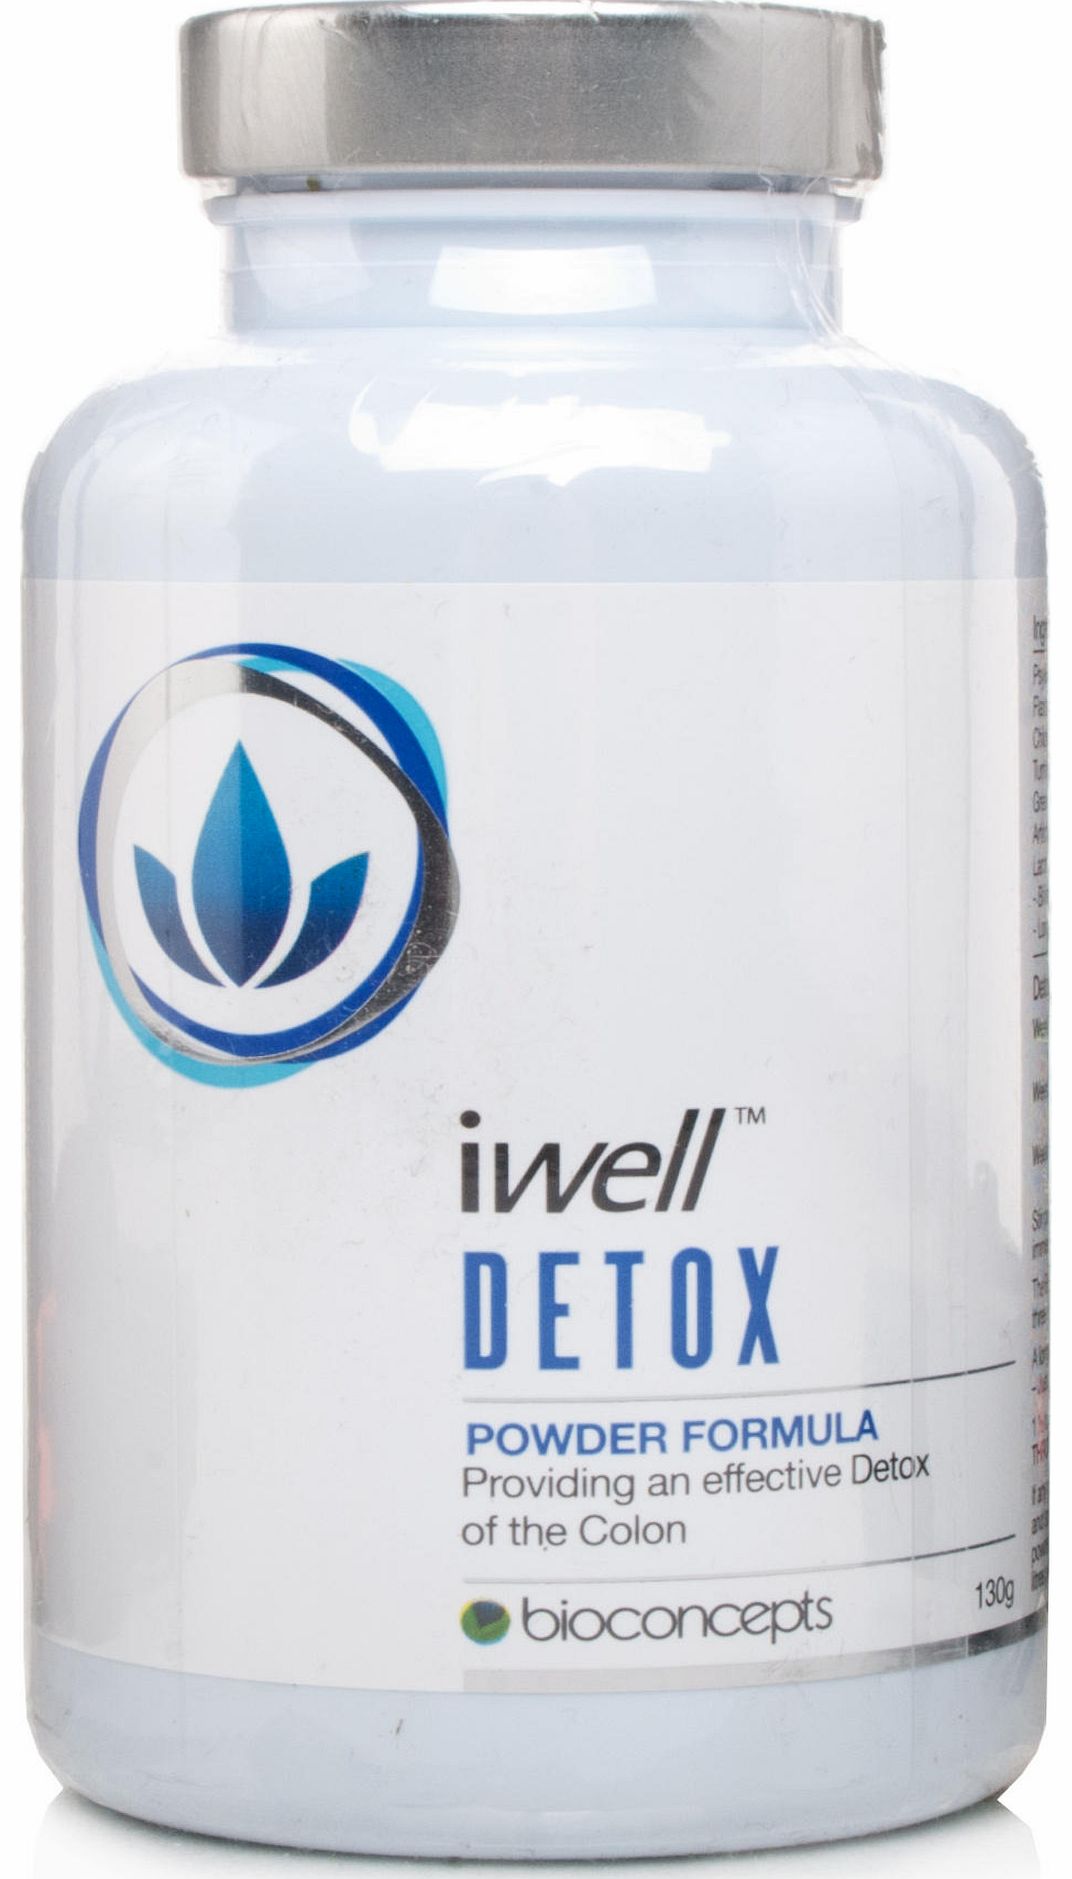 Bioconcepts iwell Detox Powder Formula